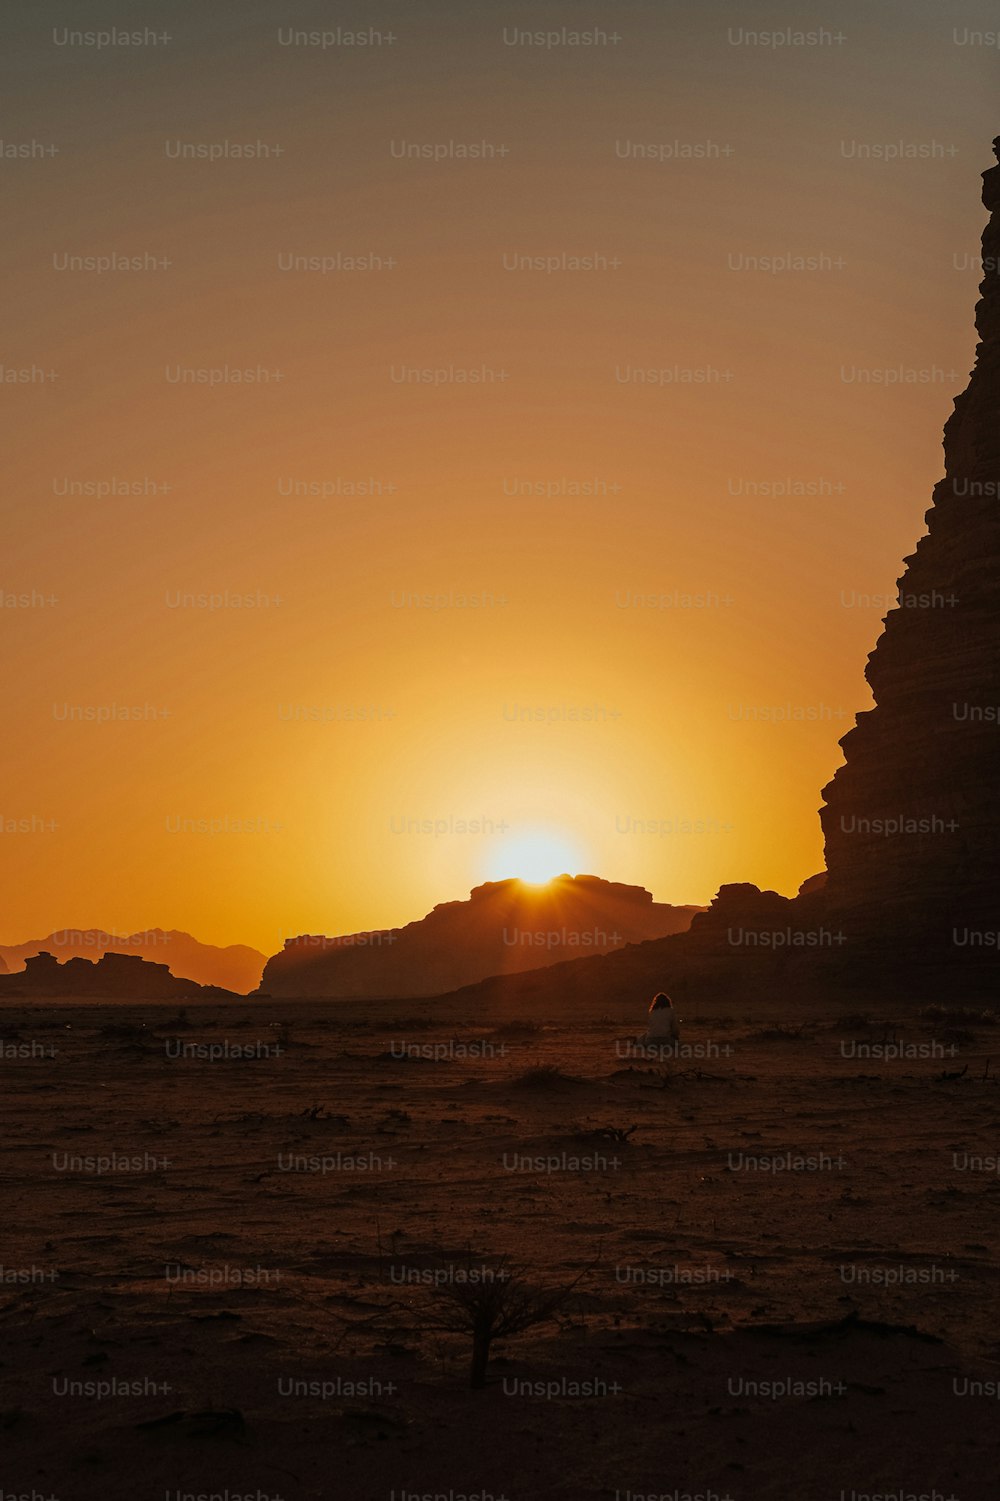 Die Sonne geht hinter einer Pyramide in der Wüste unter